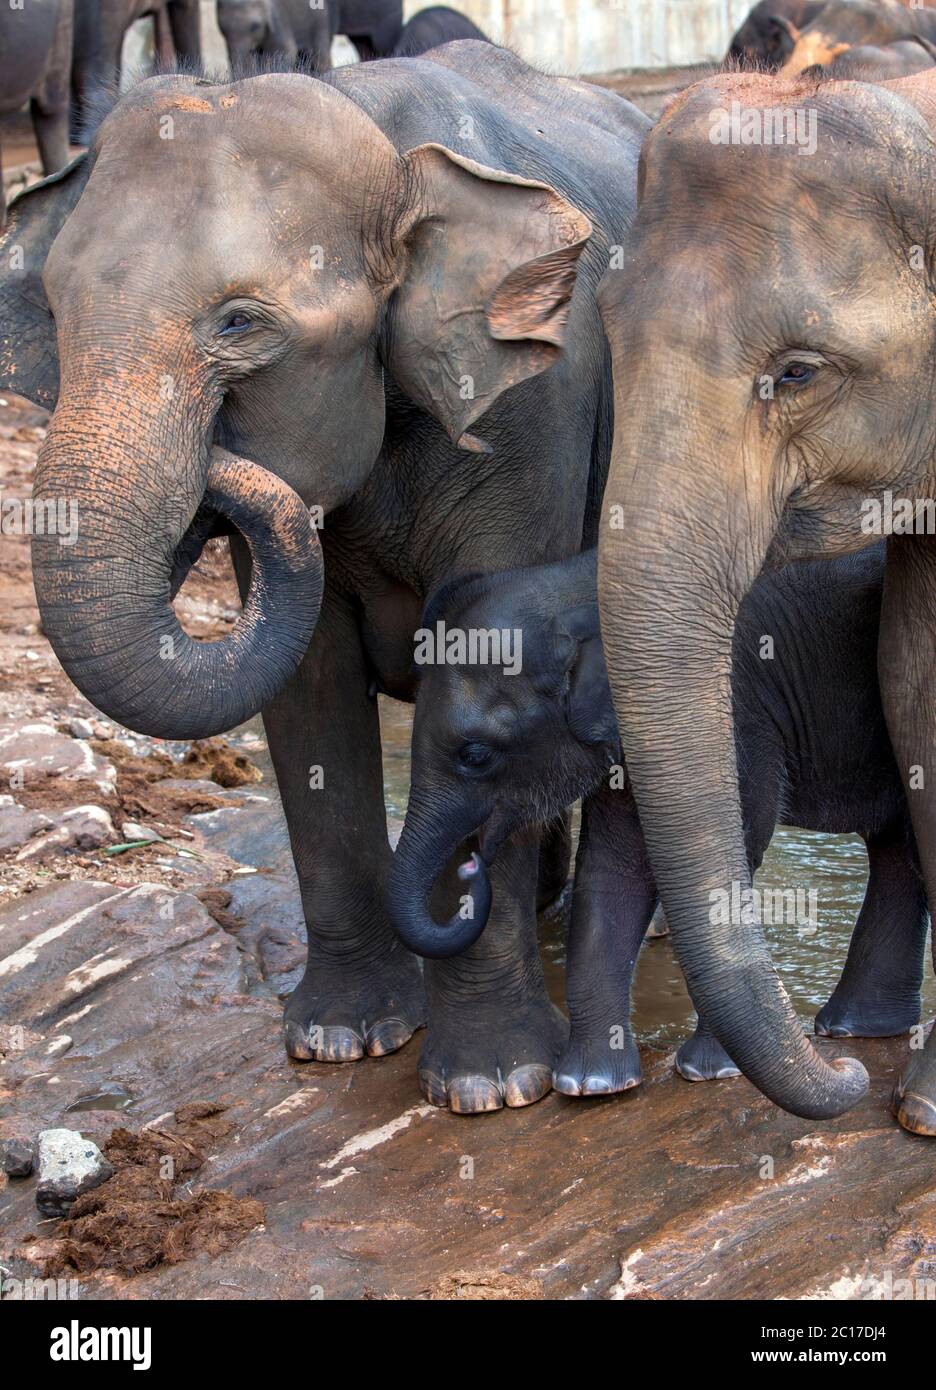 Un vitello elefante cerca sicurezza tra due elefanti adulti al fiume Maha Oya. Gli elefanti provengono dall'Orfanotrofio degli Elefanti di Pinnawala in Sri Lanka Foto Stock